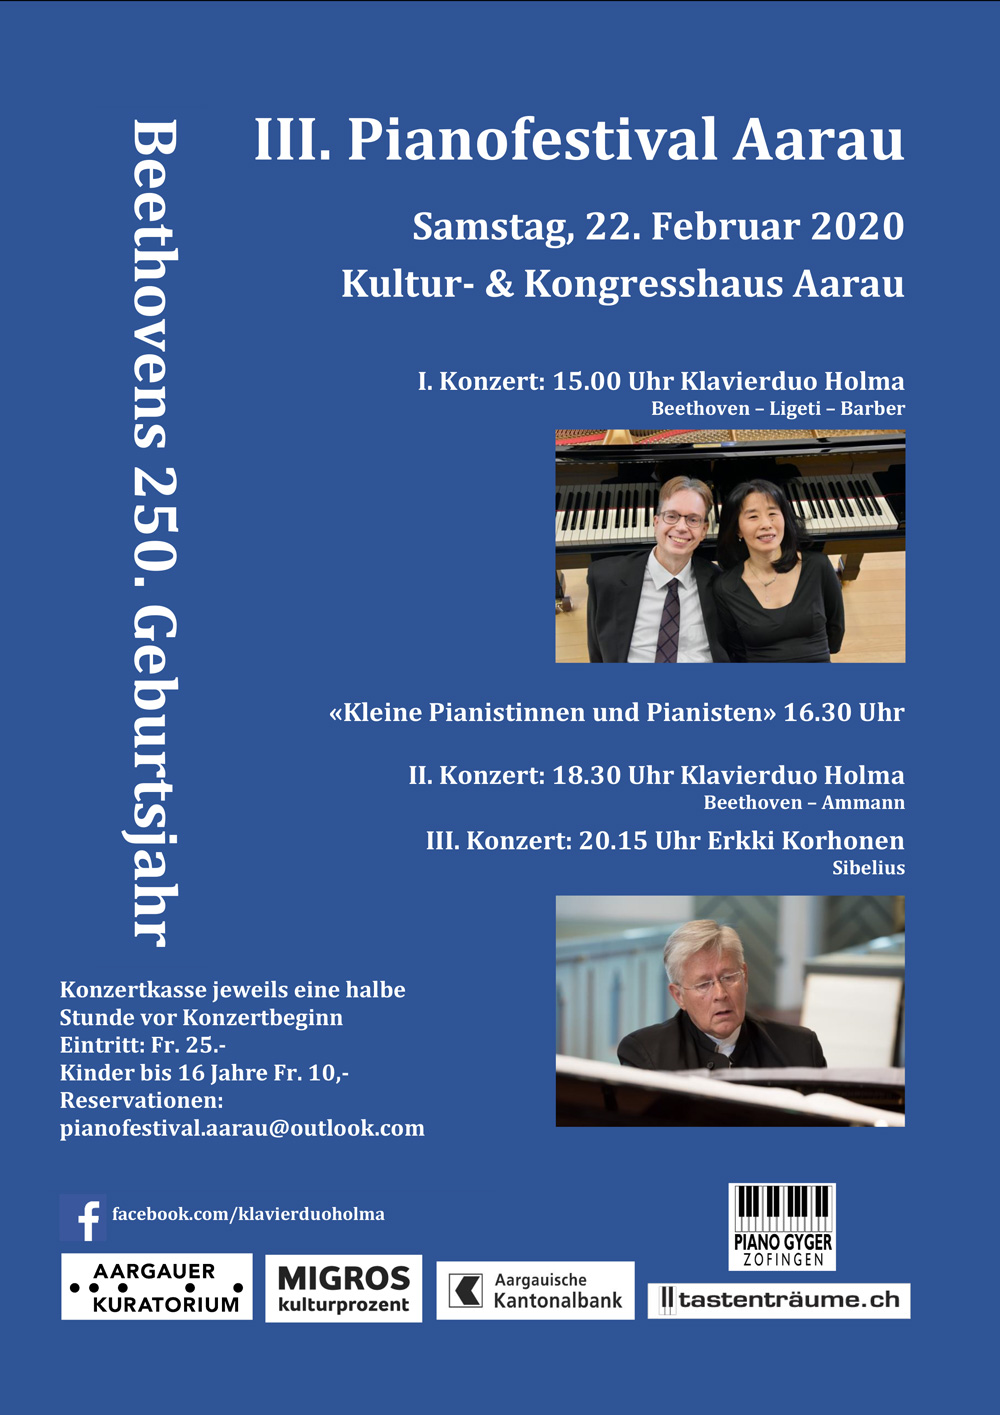 III. Pianofestival Aarau 2020